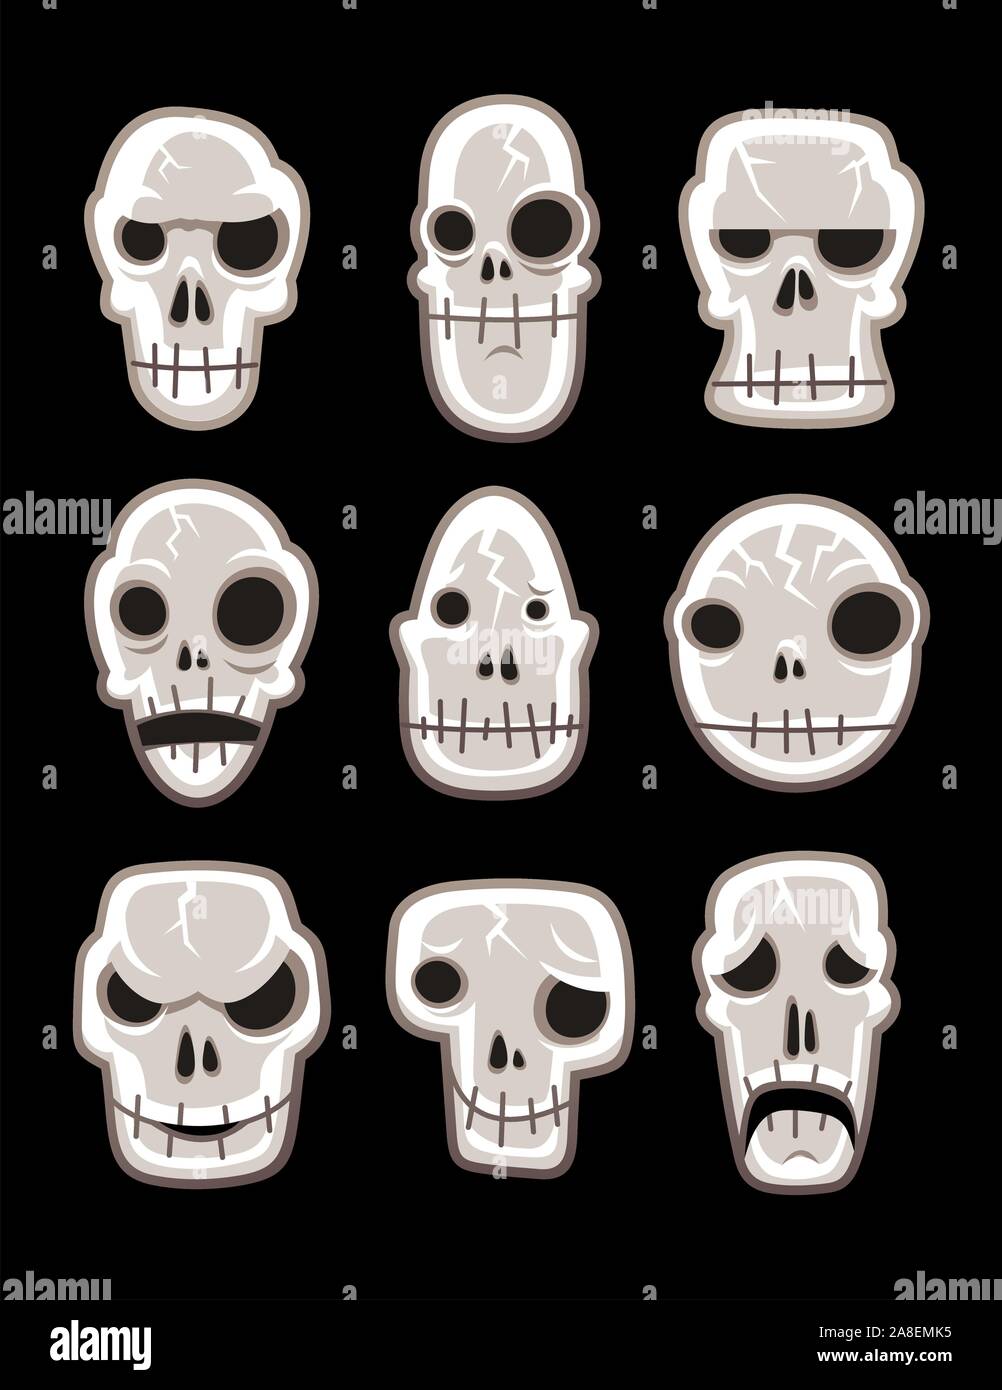 Human skeleton dead Skull horror silhouette symbol Illustration Stock Vector